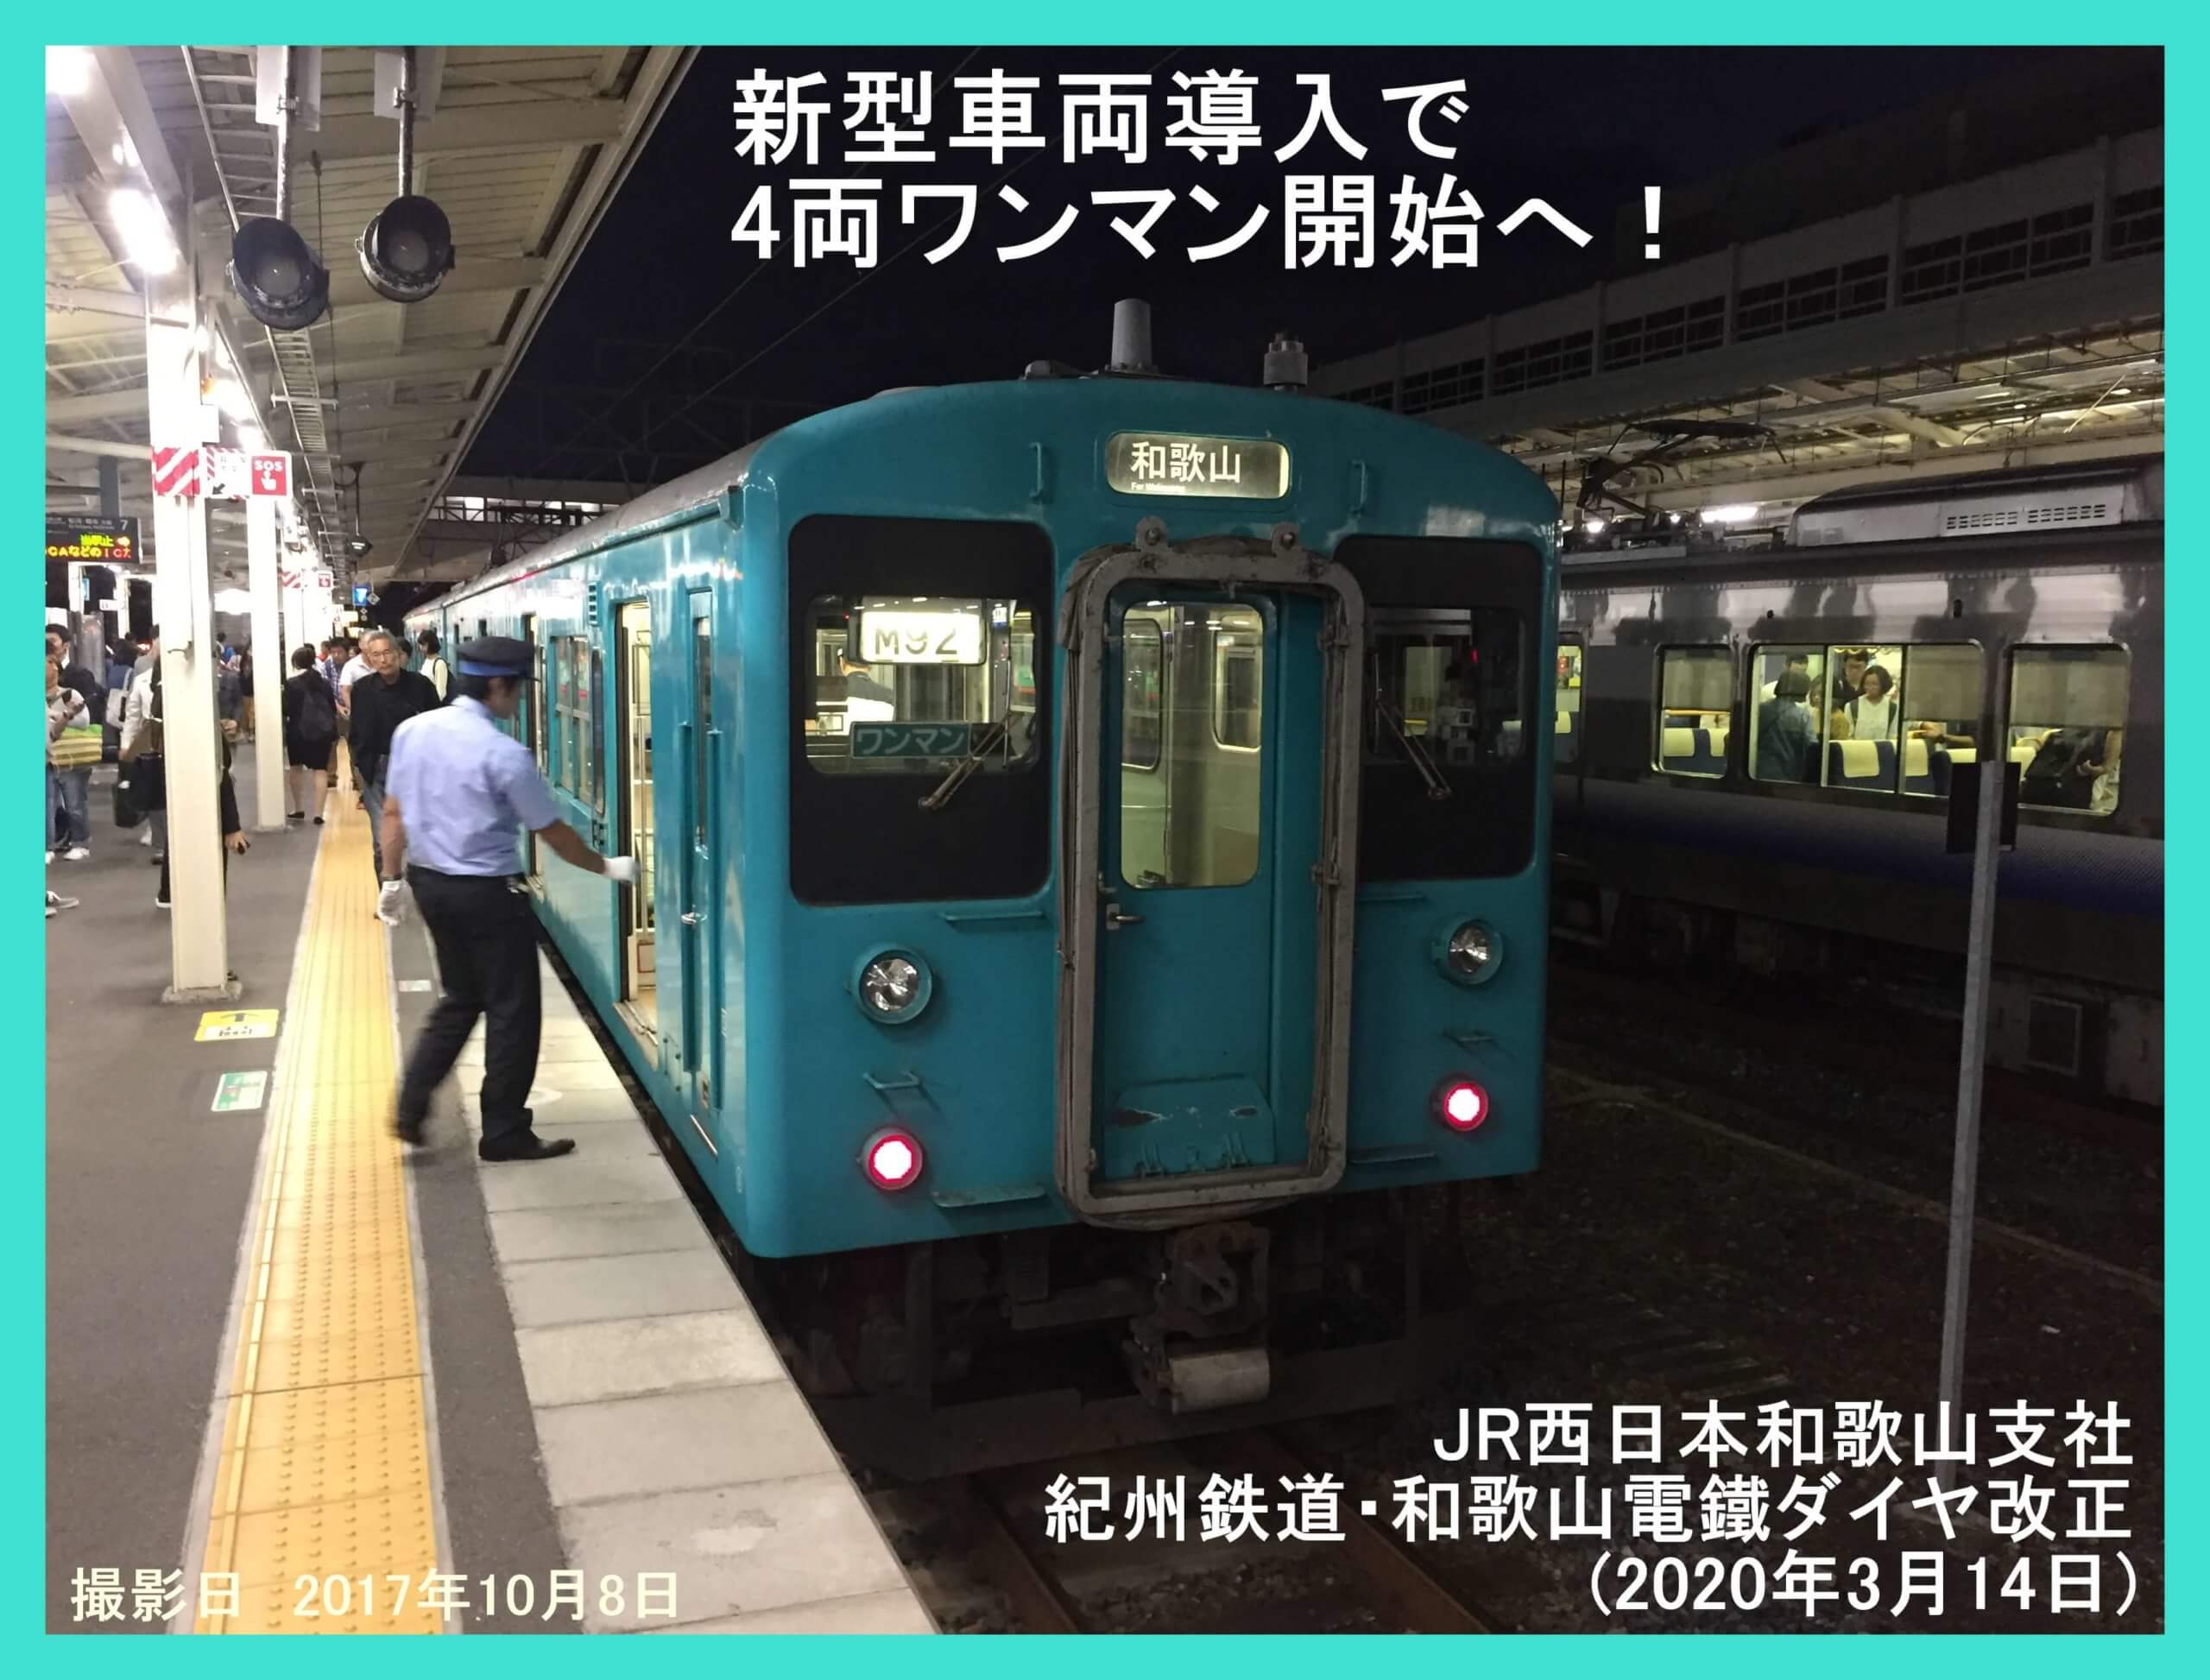 と ワンマン は 運転 JR東日本で人員削減などの合理化が進む 駅に定着している「発車メロディー」が危機か｜ニフティニュース